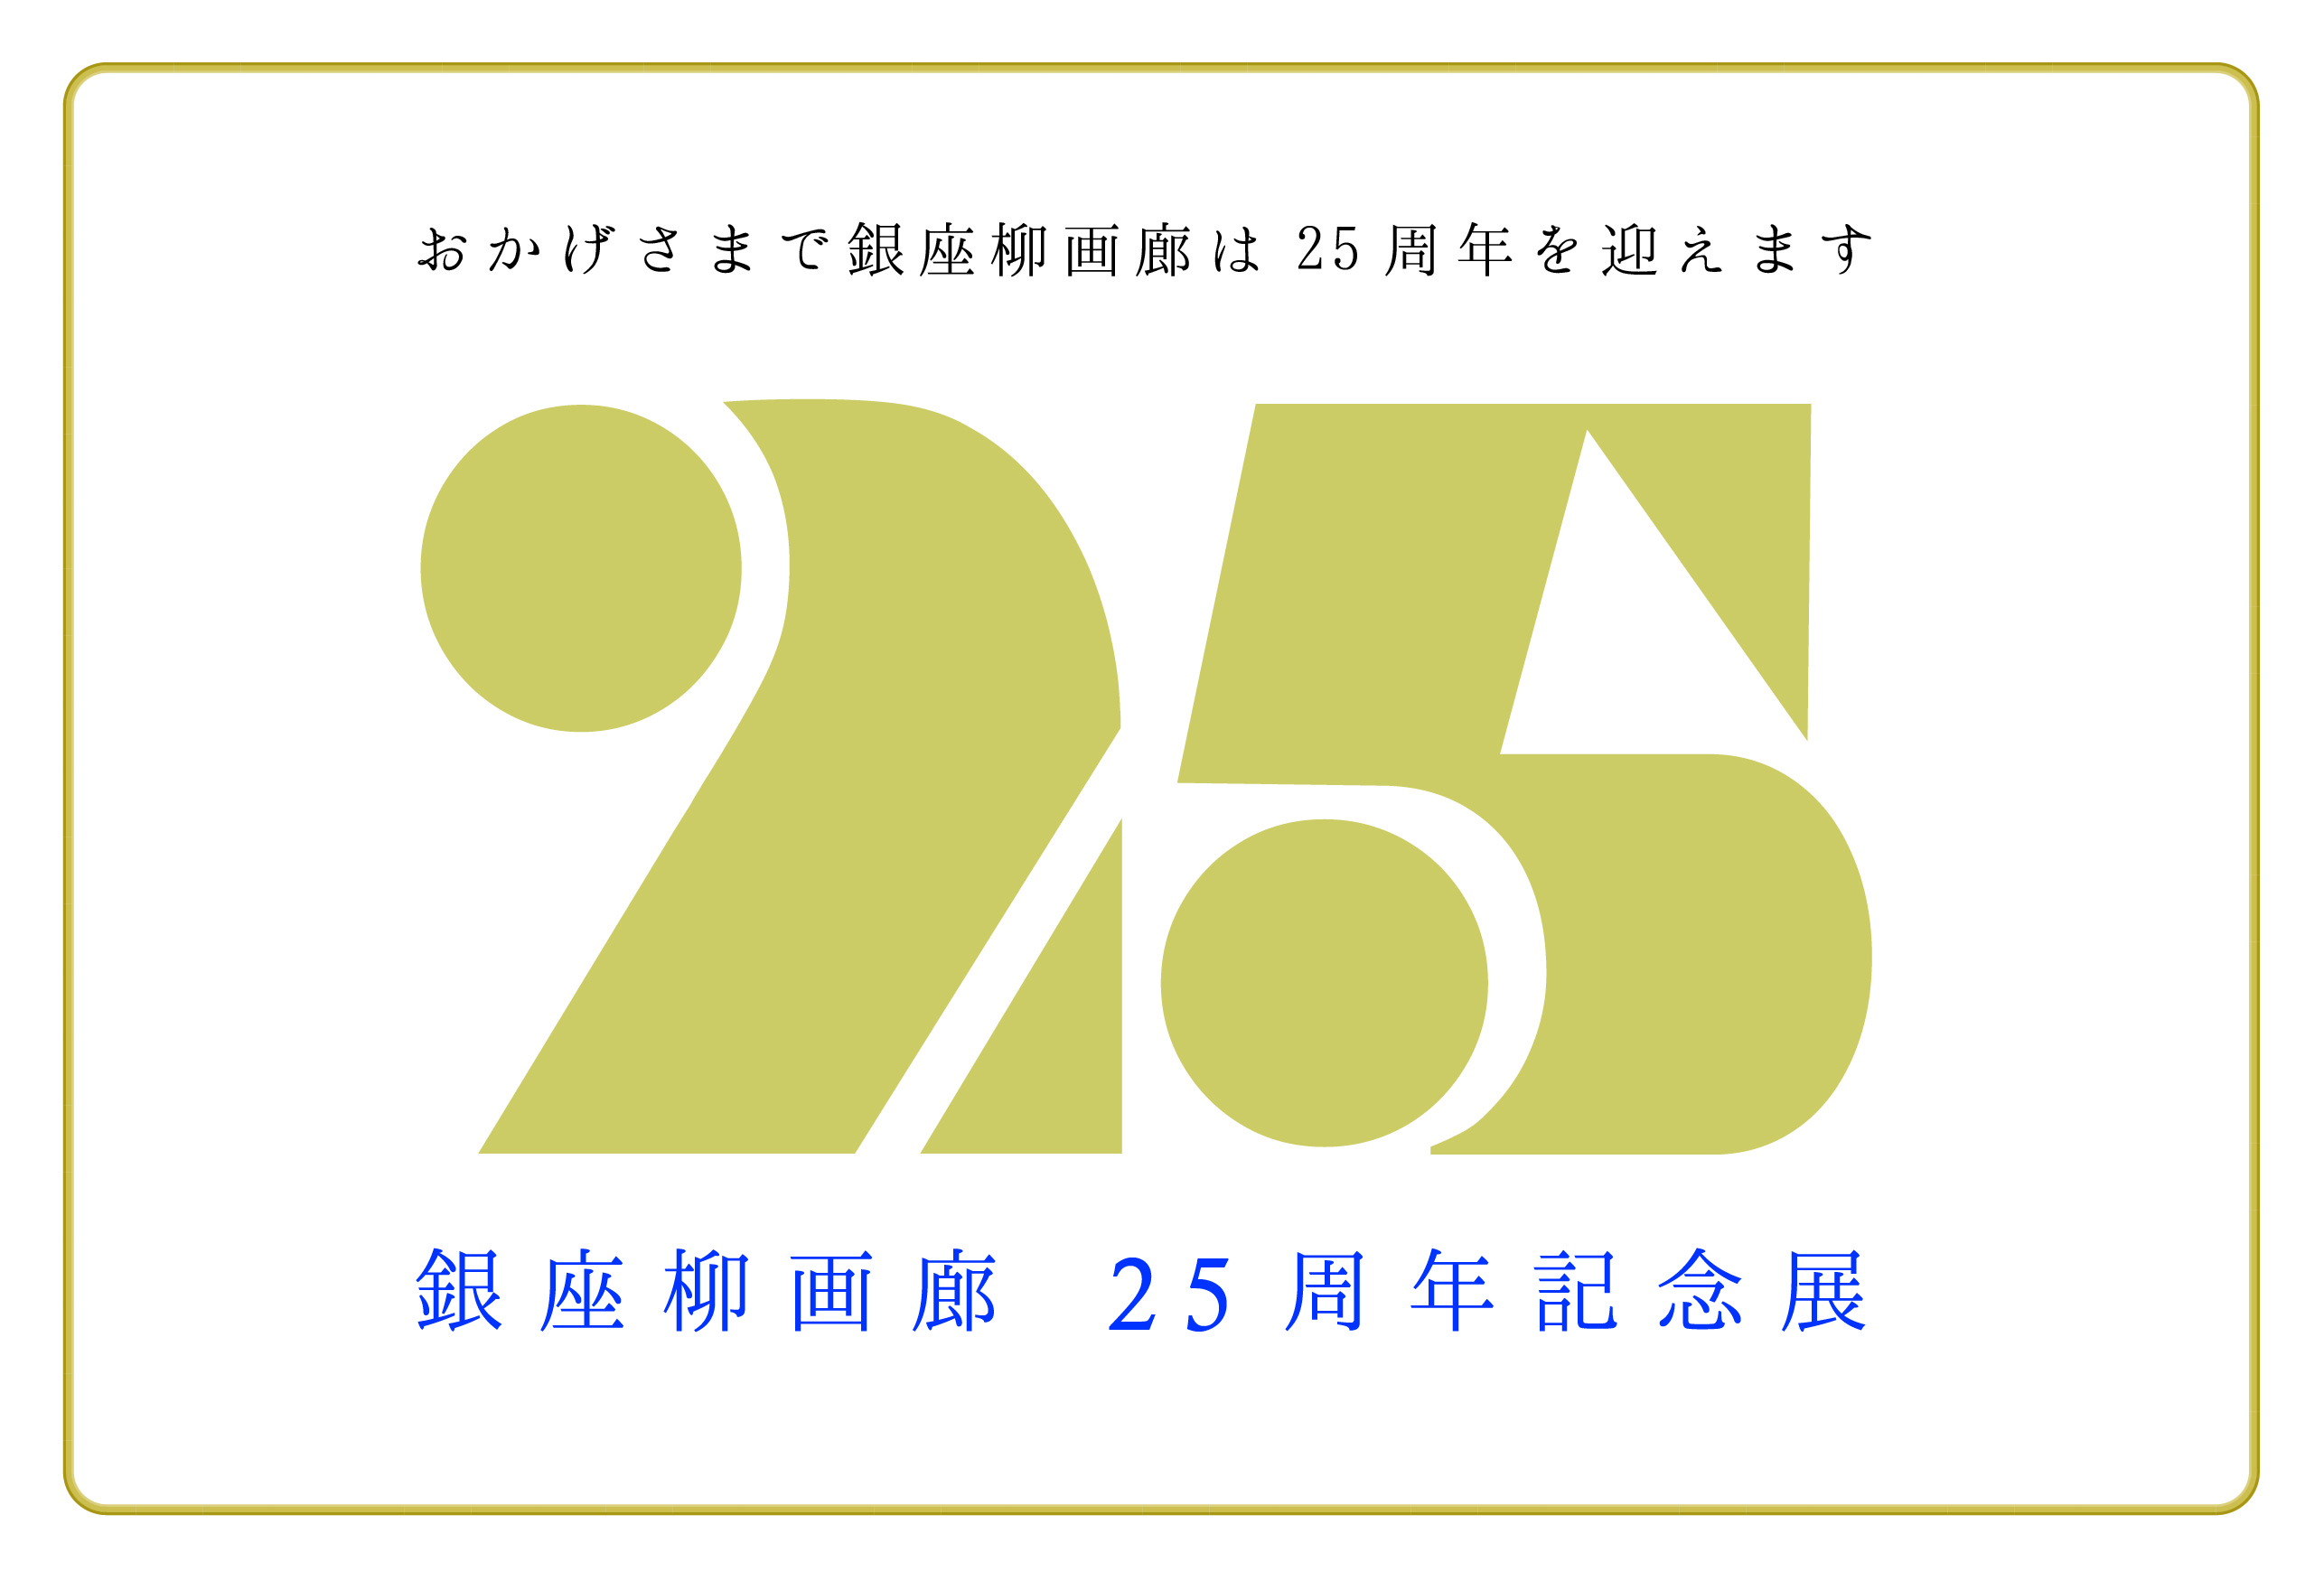 「銀座柳画廊25周年記念展」開催のお知らせ